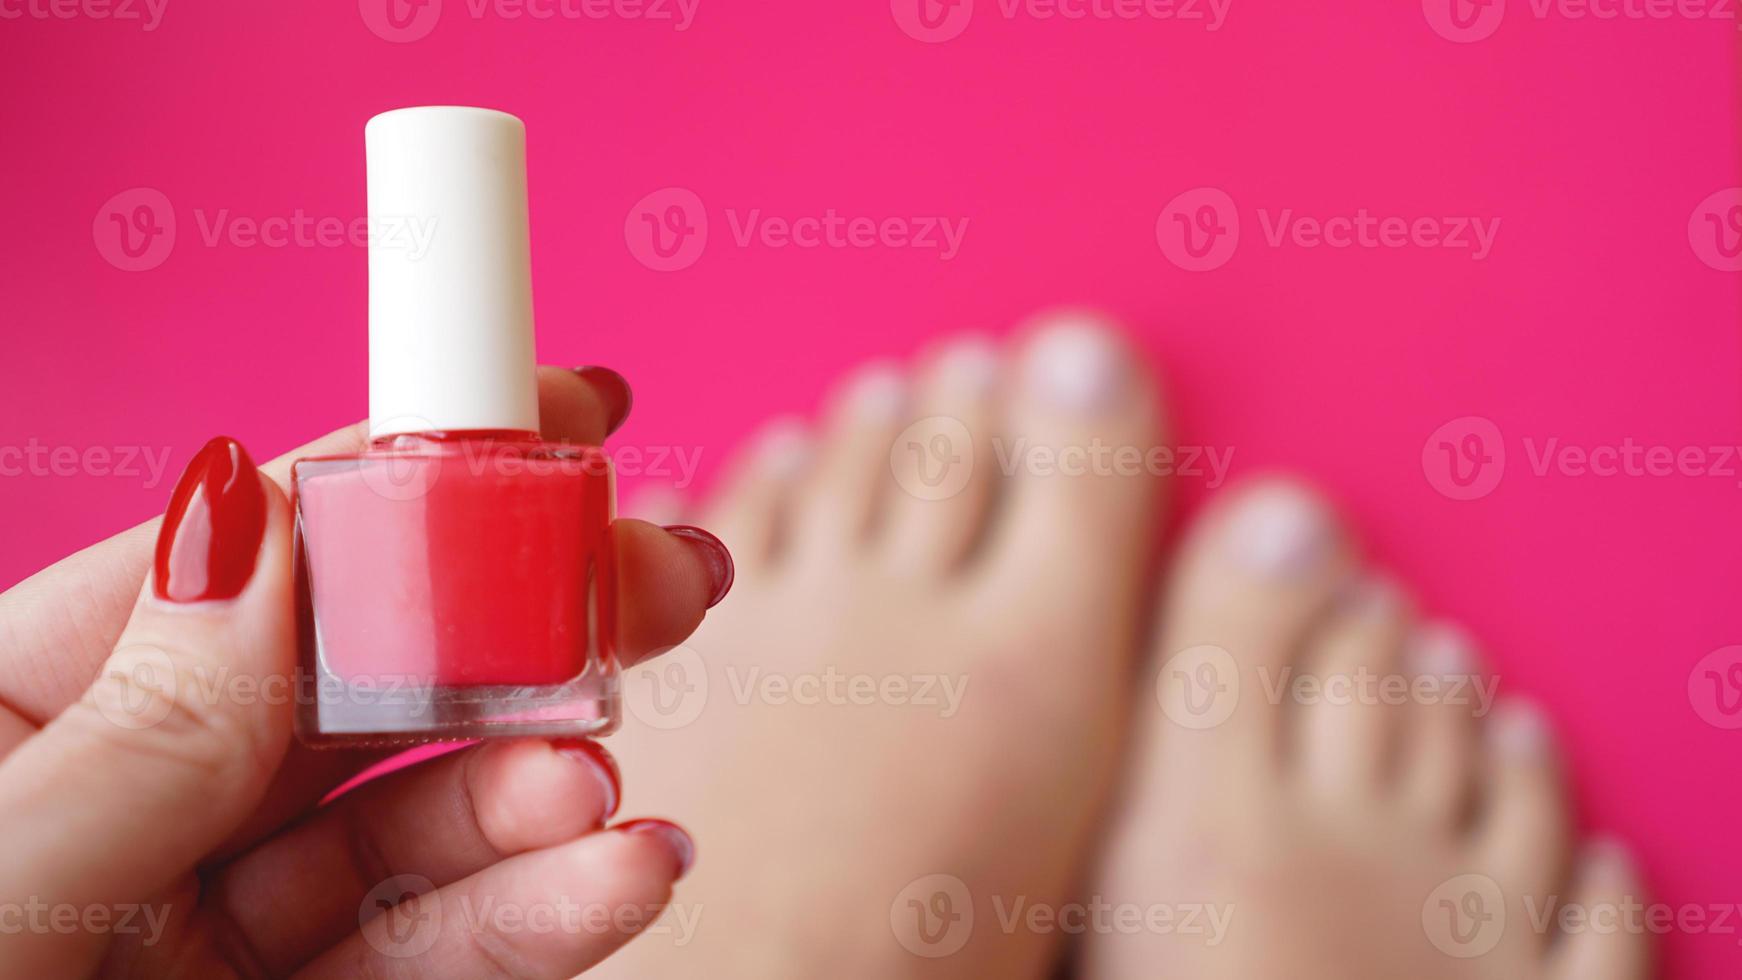 pies de mujer joven perfecta arreglada sobre fondo rosa. preocuparse por las uñas foto